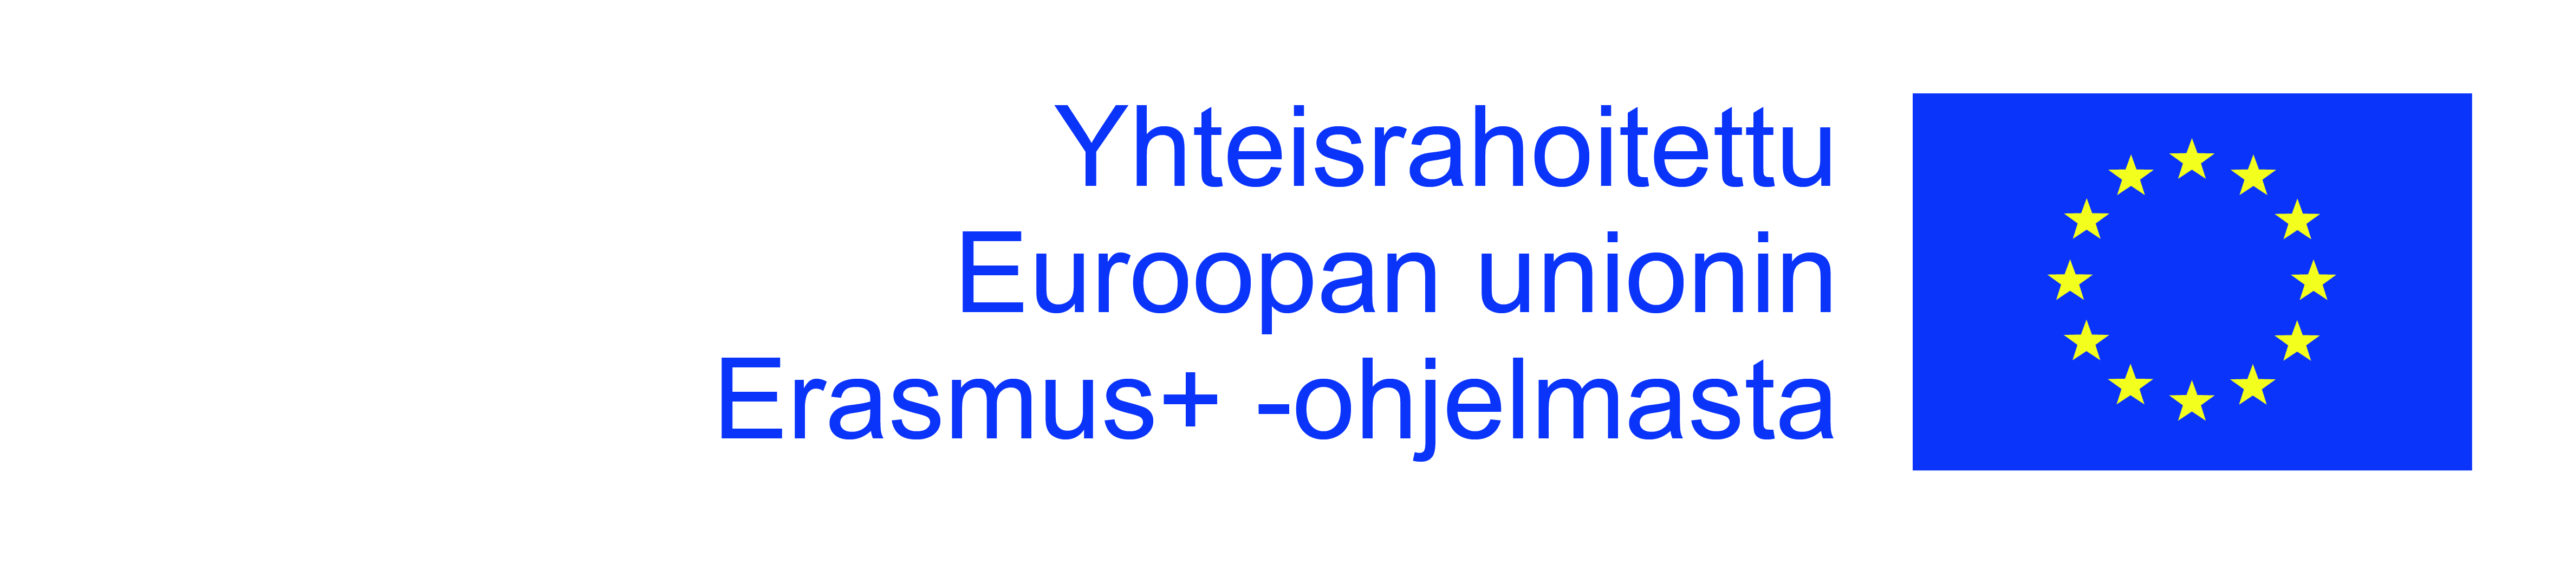 Yhteisrahoitettu Euroopan unionin Erasmus+ -ohjelmasta, kuvassa myös EU:n lippu.